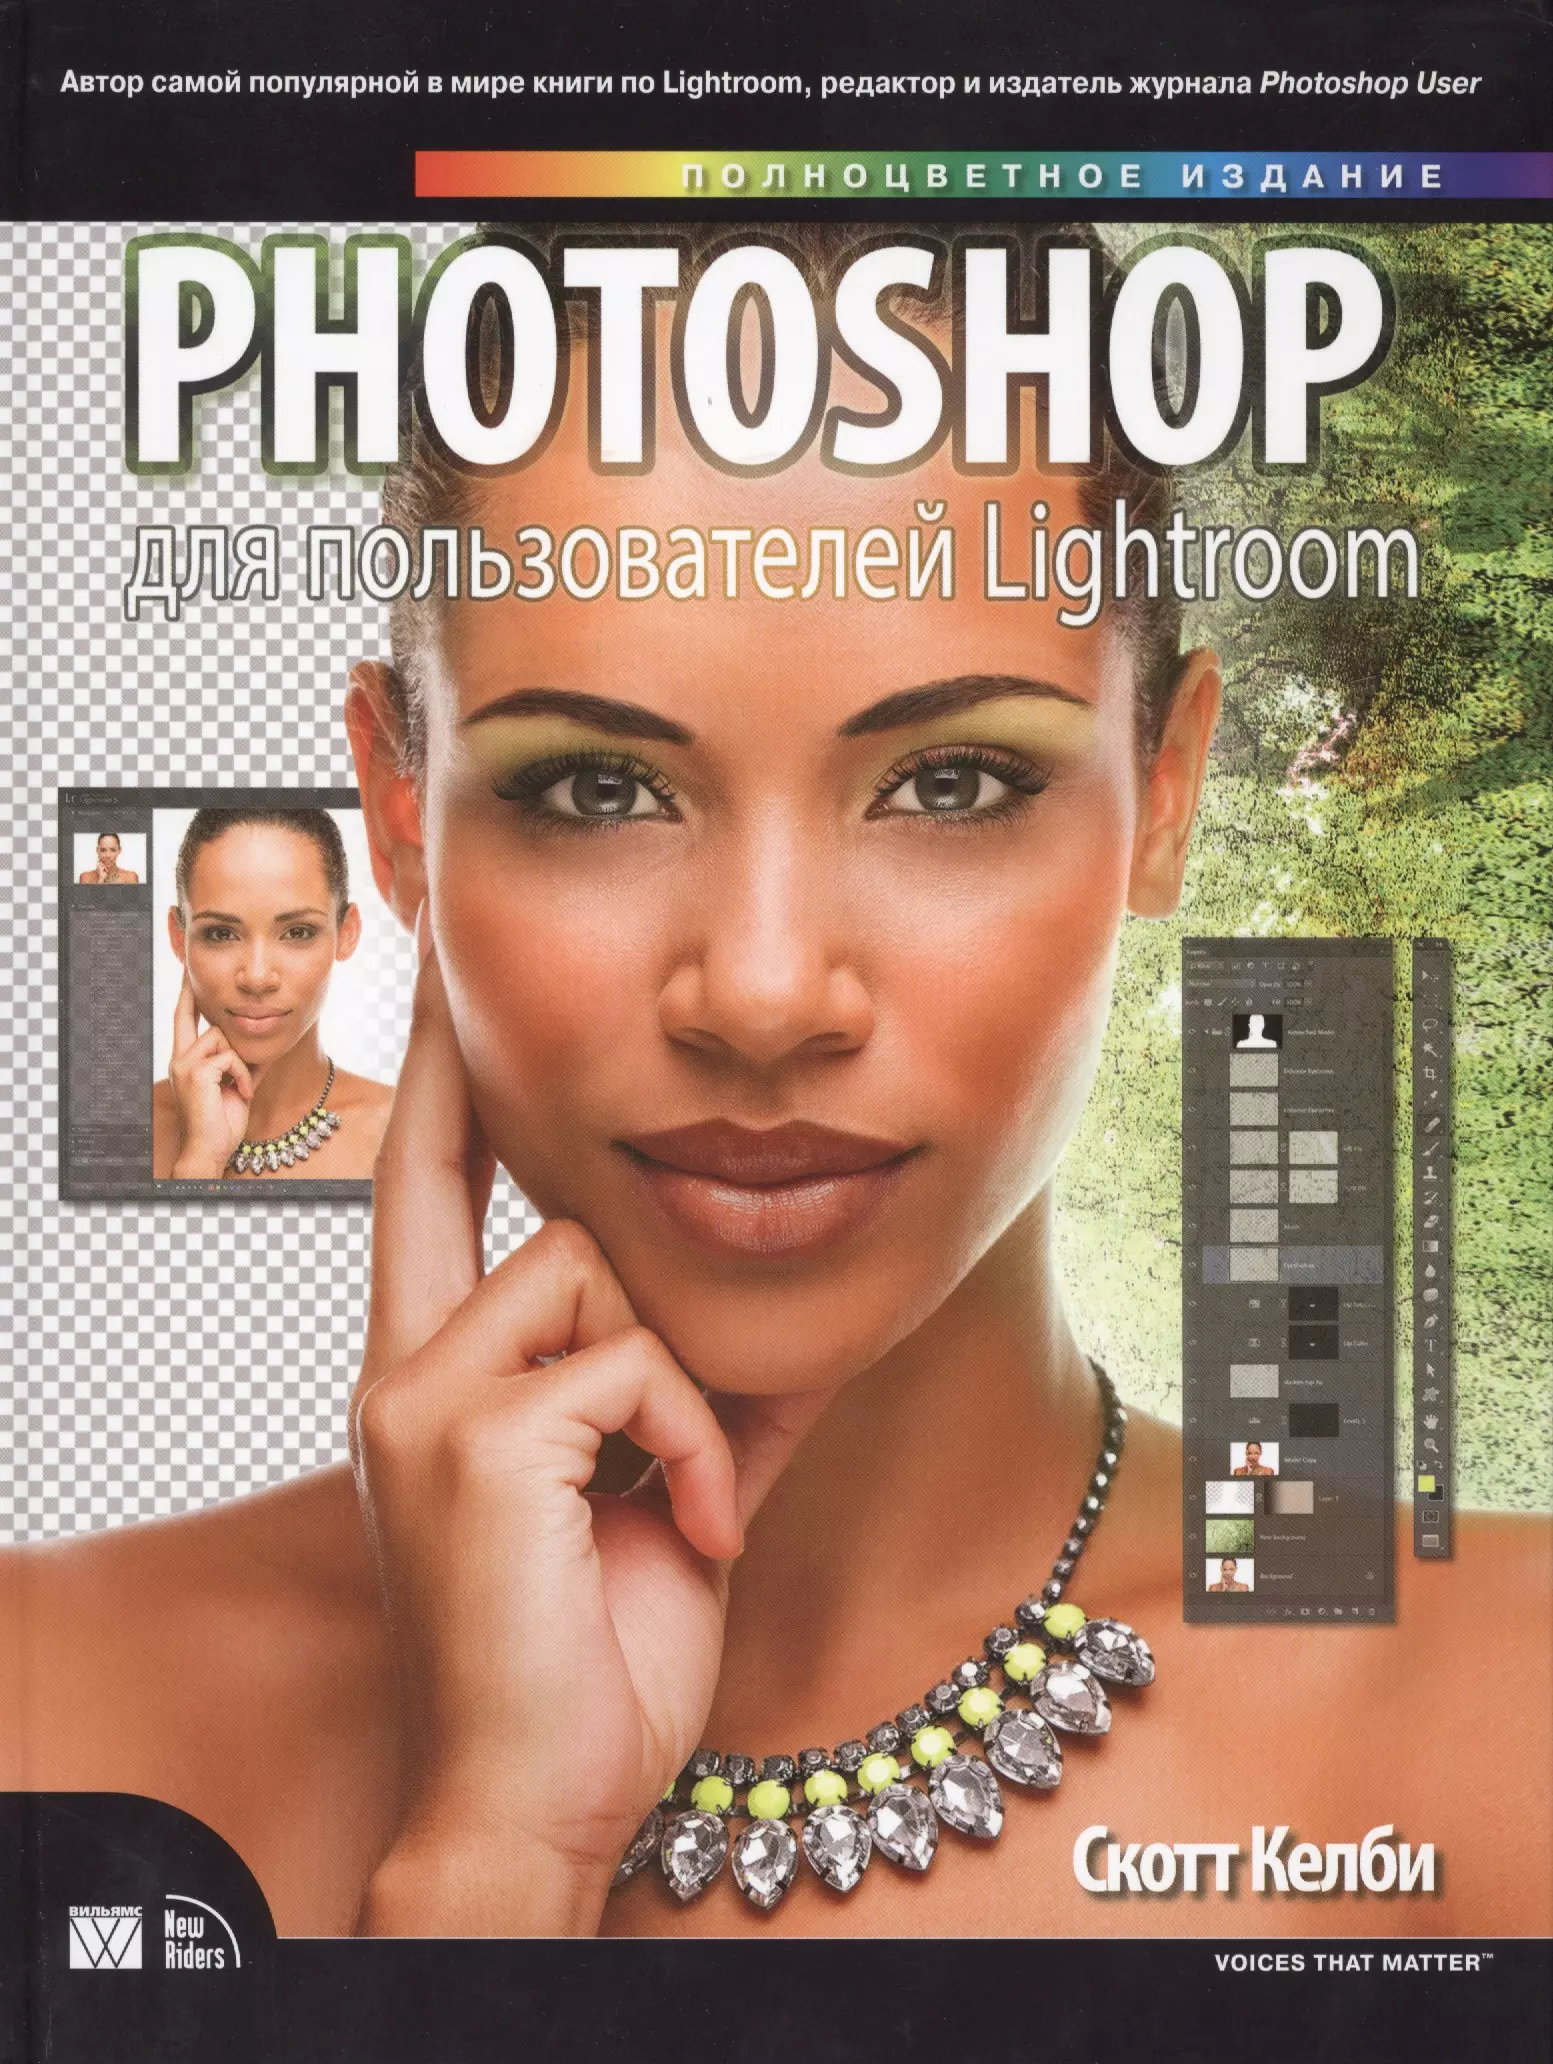 Келби Скотт Photoshop для пользователей Lightroom келби с обработка фотографий в lightroom classic быстрые способы достижения отличных результатов